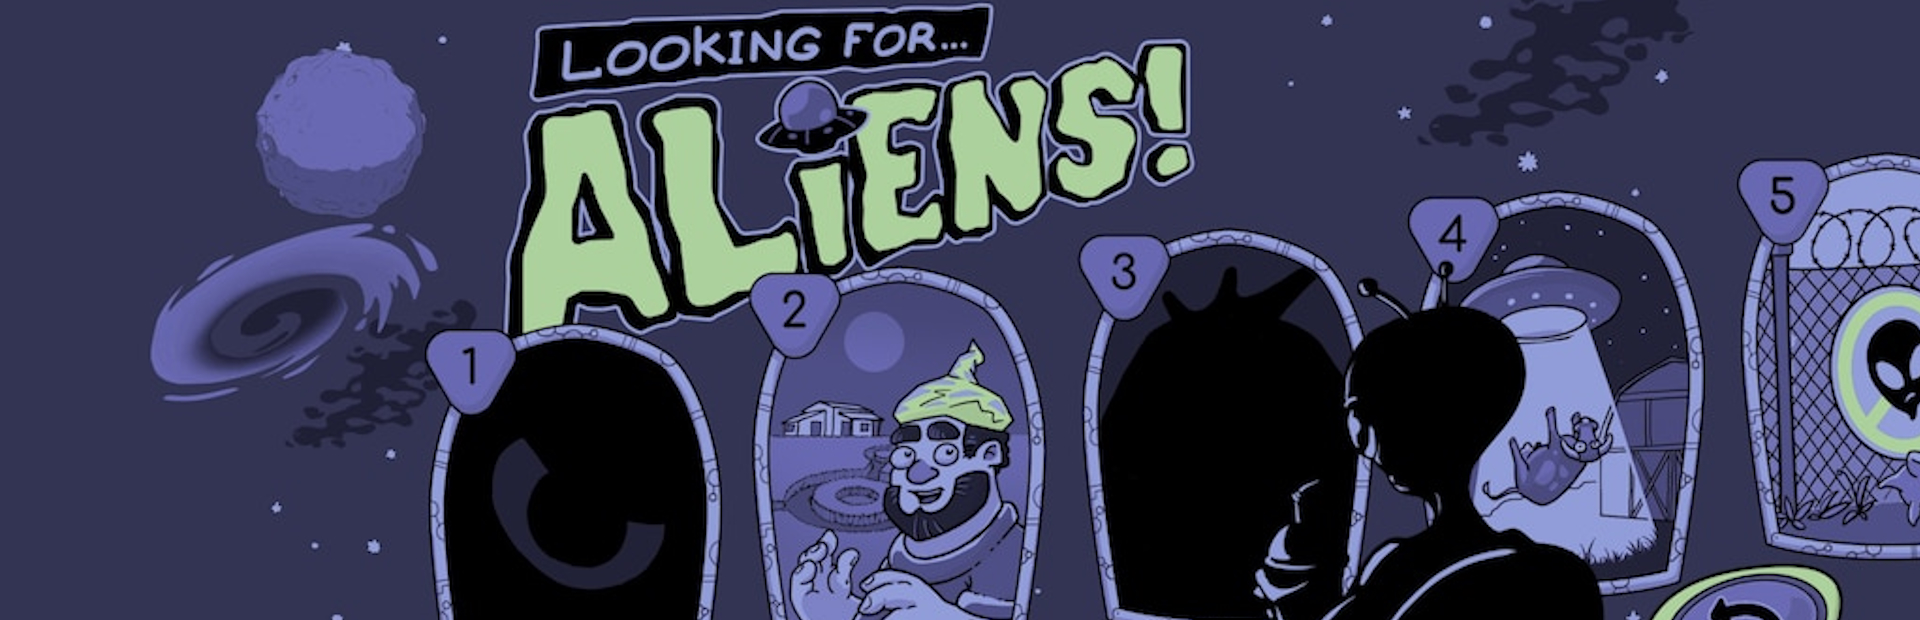 دانلود بازی Looking for Aliens برای پی سی | گیمباتو